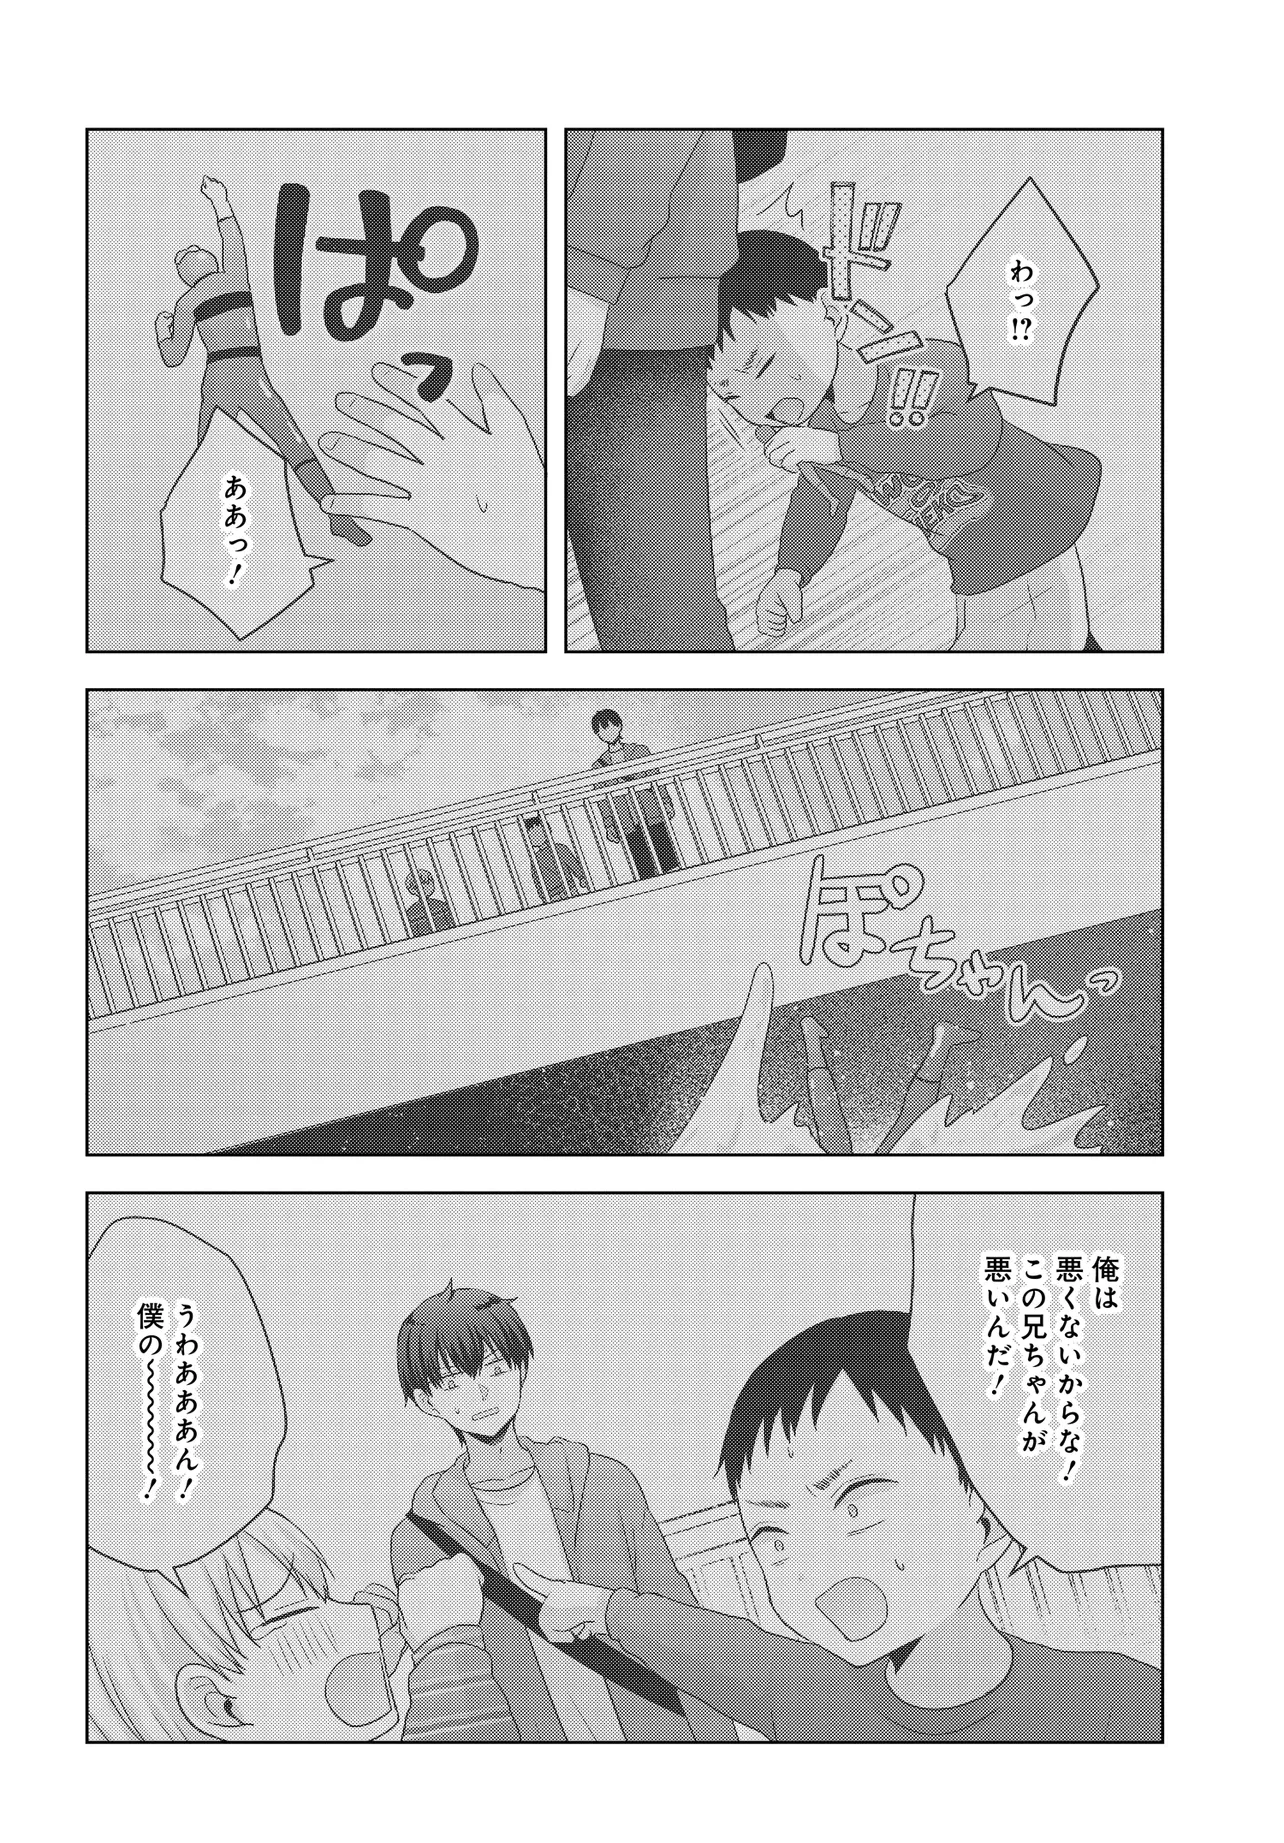 Suufun Go no Mirai ga Wakaru you ni Natta kedo, Onnagokoro wa Wakaranai. - Chapter 1 - Page 20